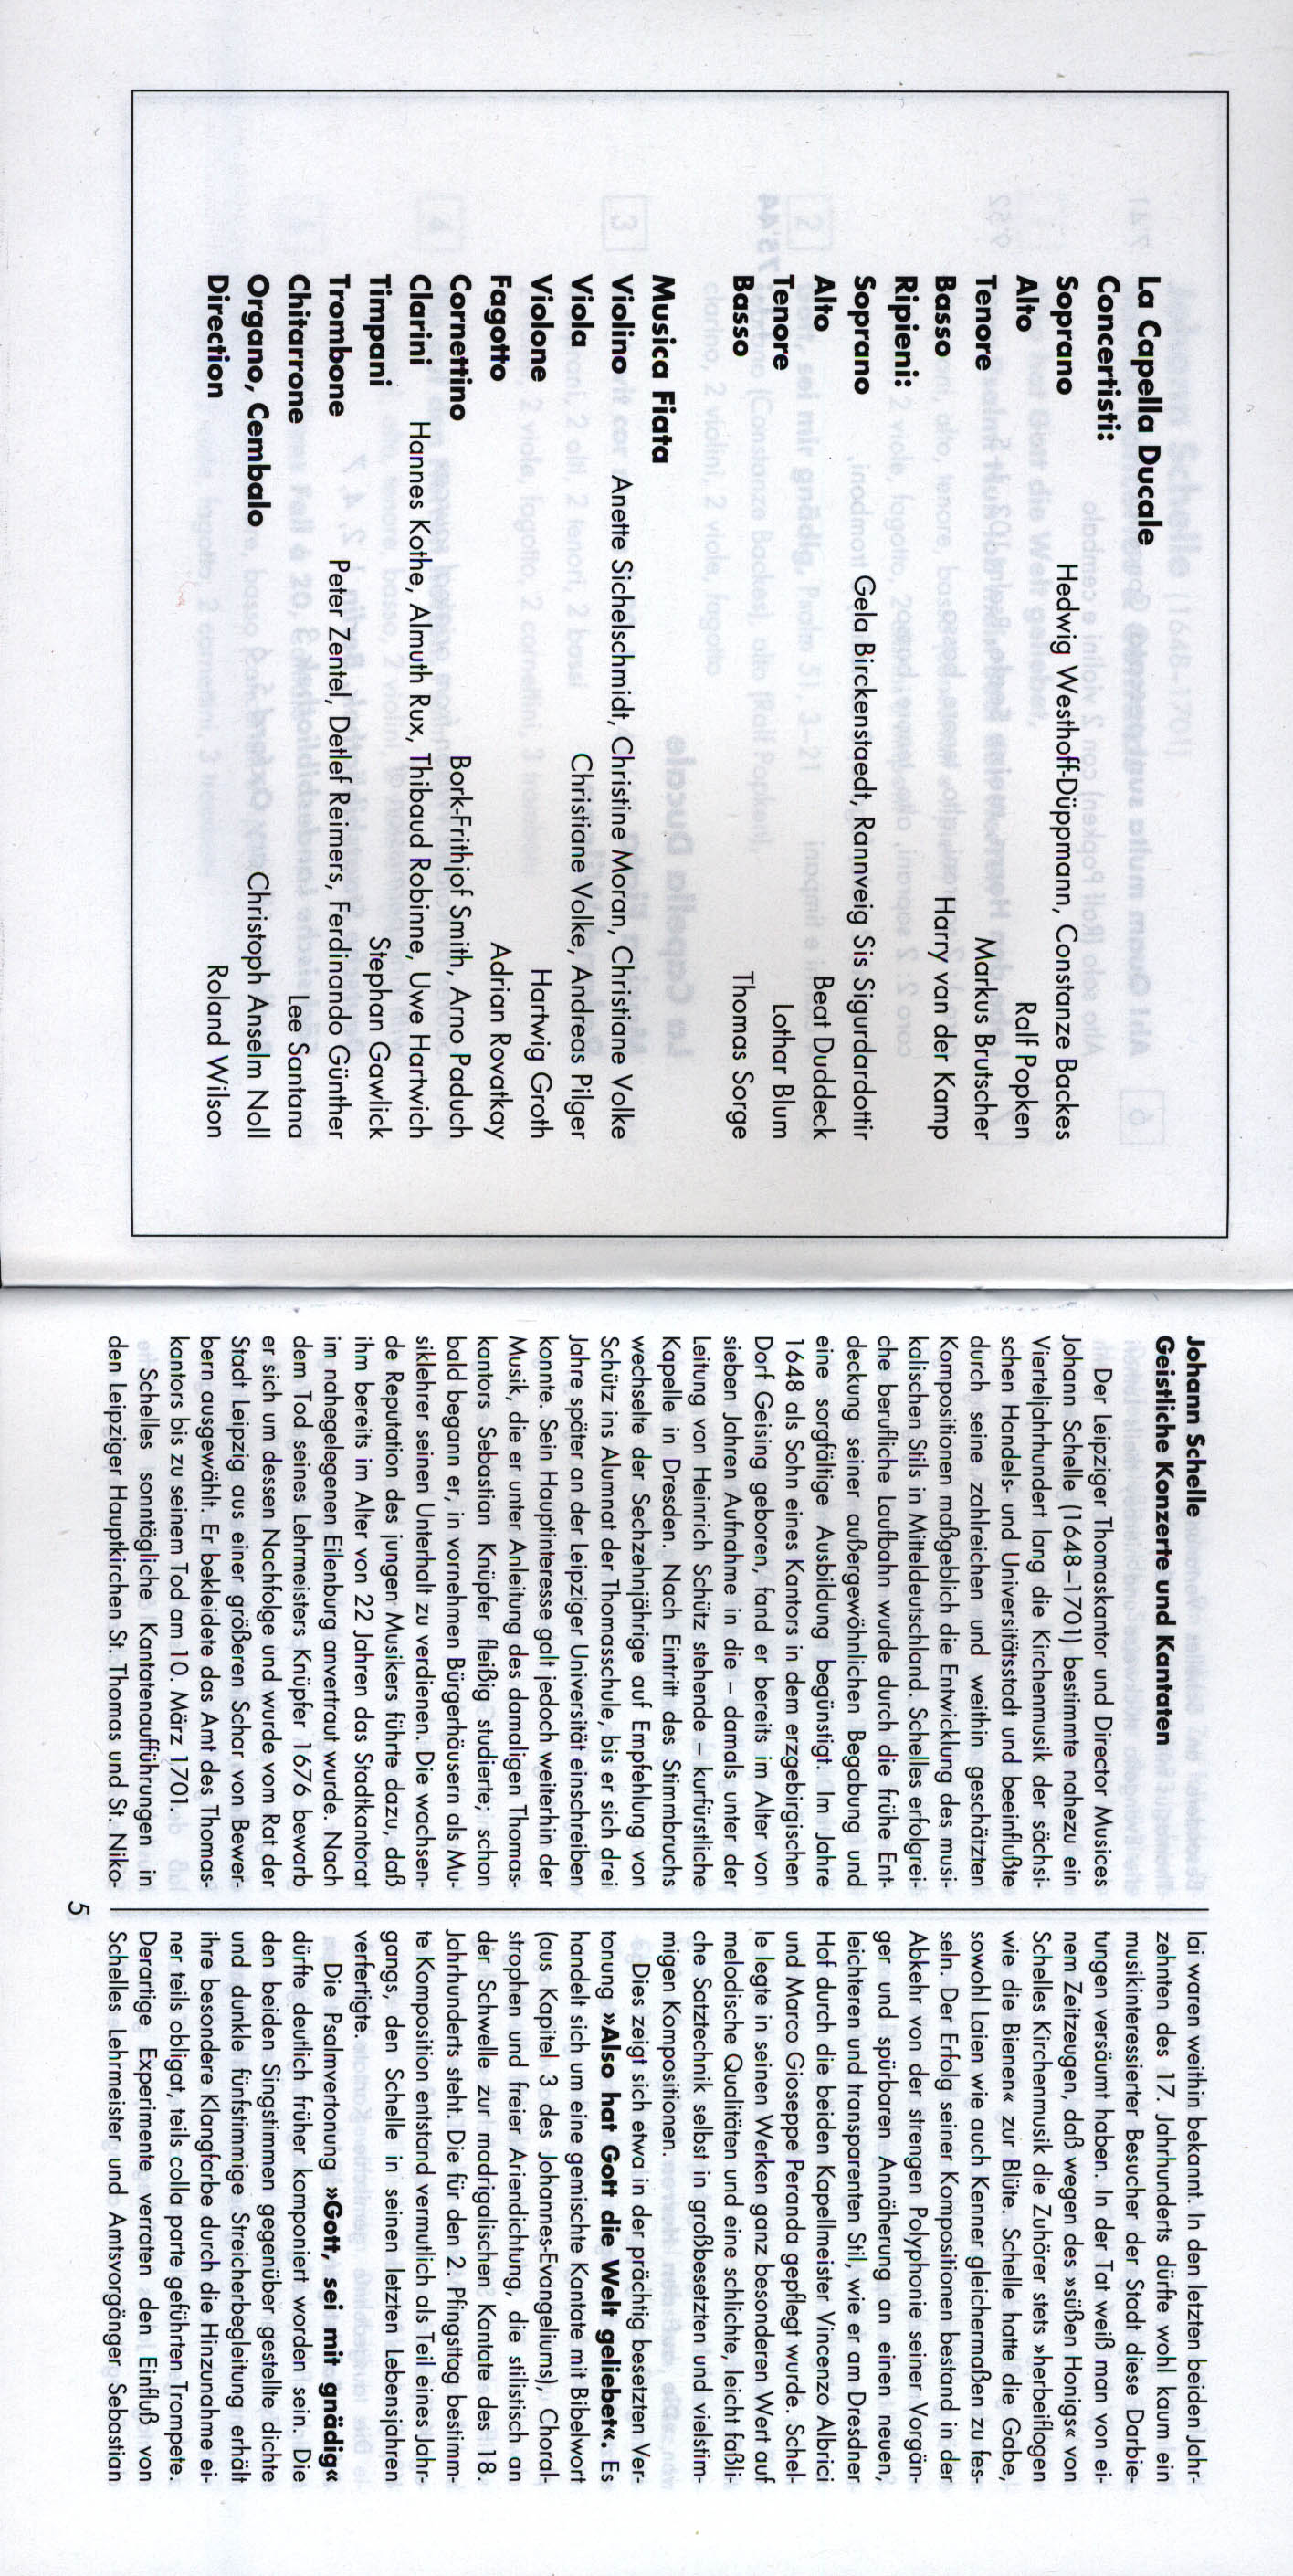 Sacred Concertos  Cantatas - Sacred Concertos  Cantatas La Capella Ducale - Musica Fiata - R.Wilson - booklet 02.jpg